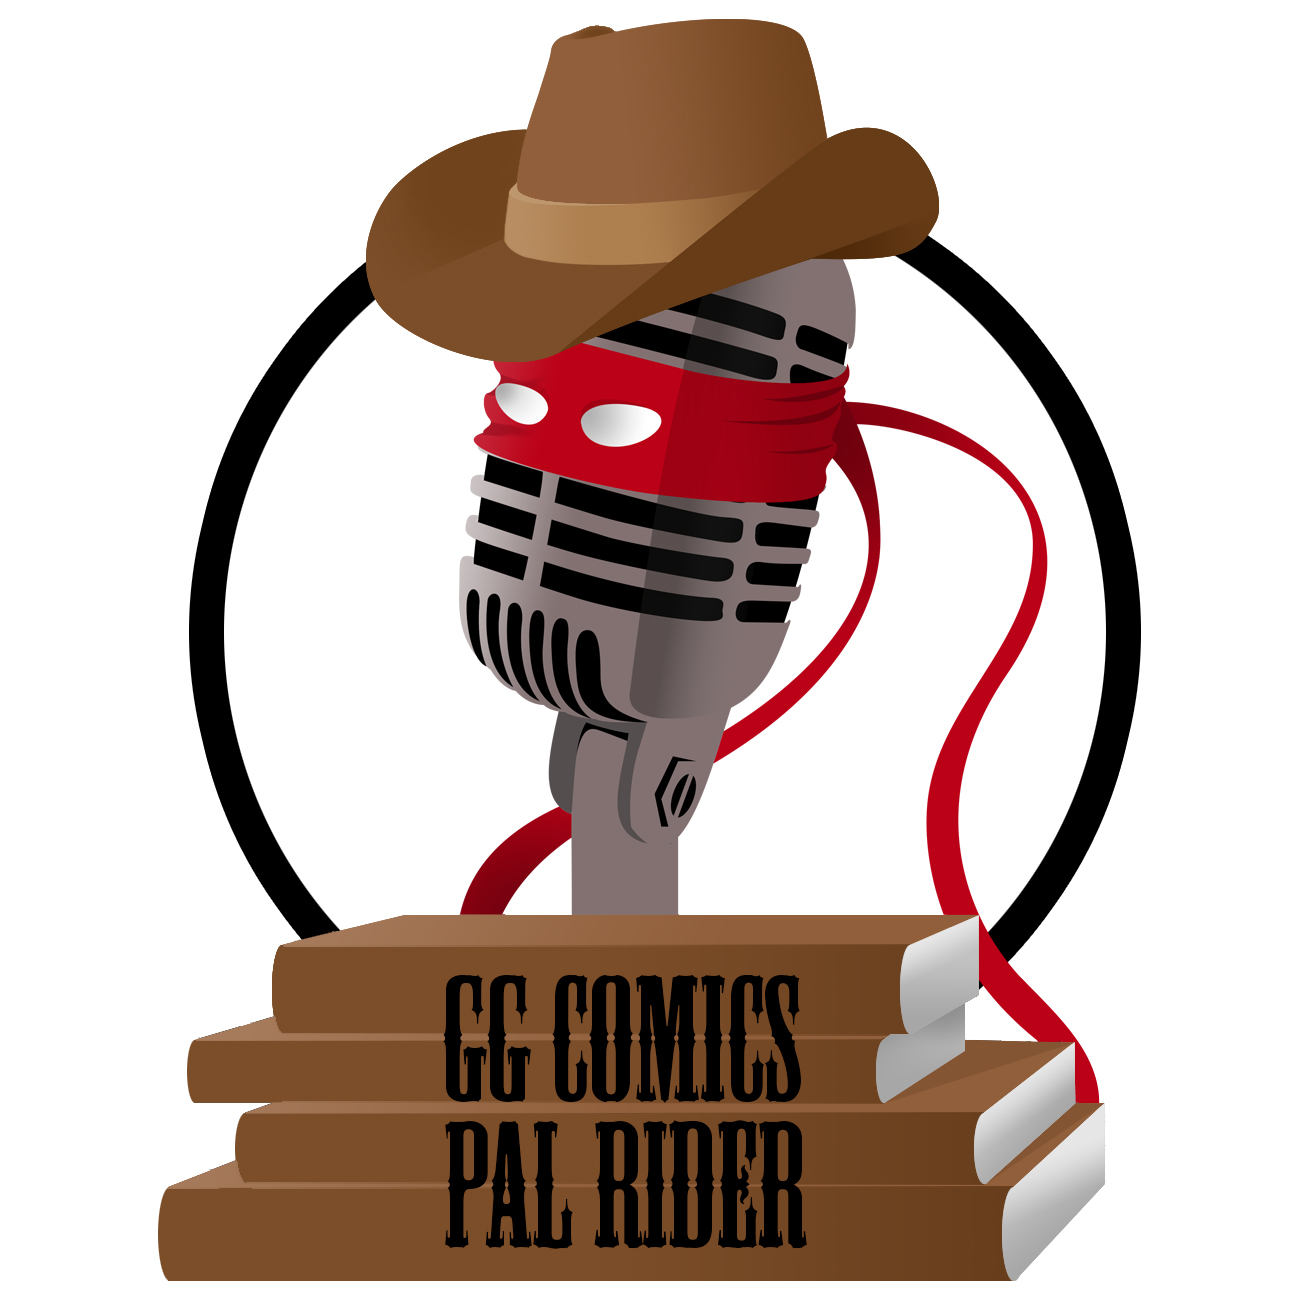 Les GG comics - PAL Rider 07 avec Le Néophyte des Comics